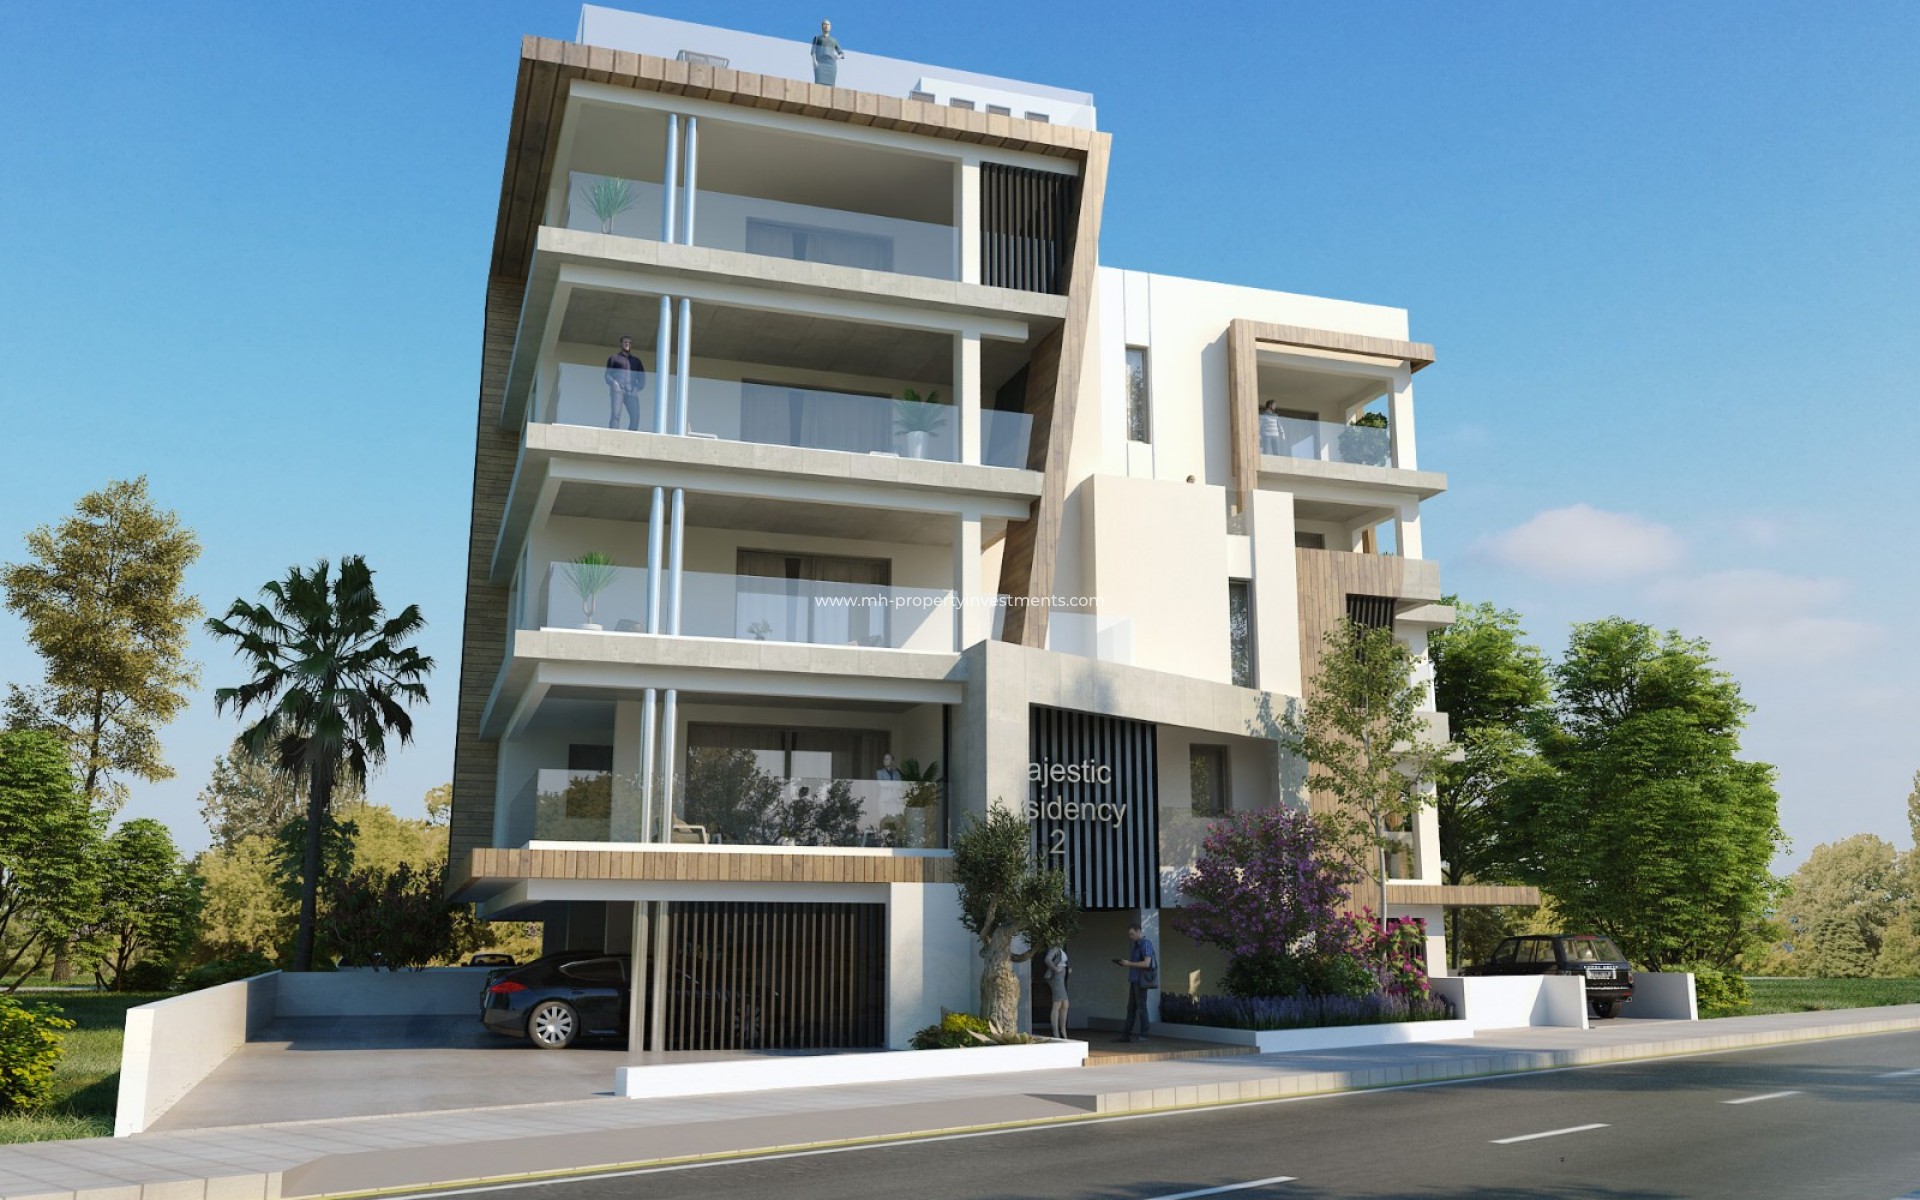 under construction - Apartment - Larnaca - Harbor